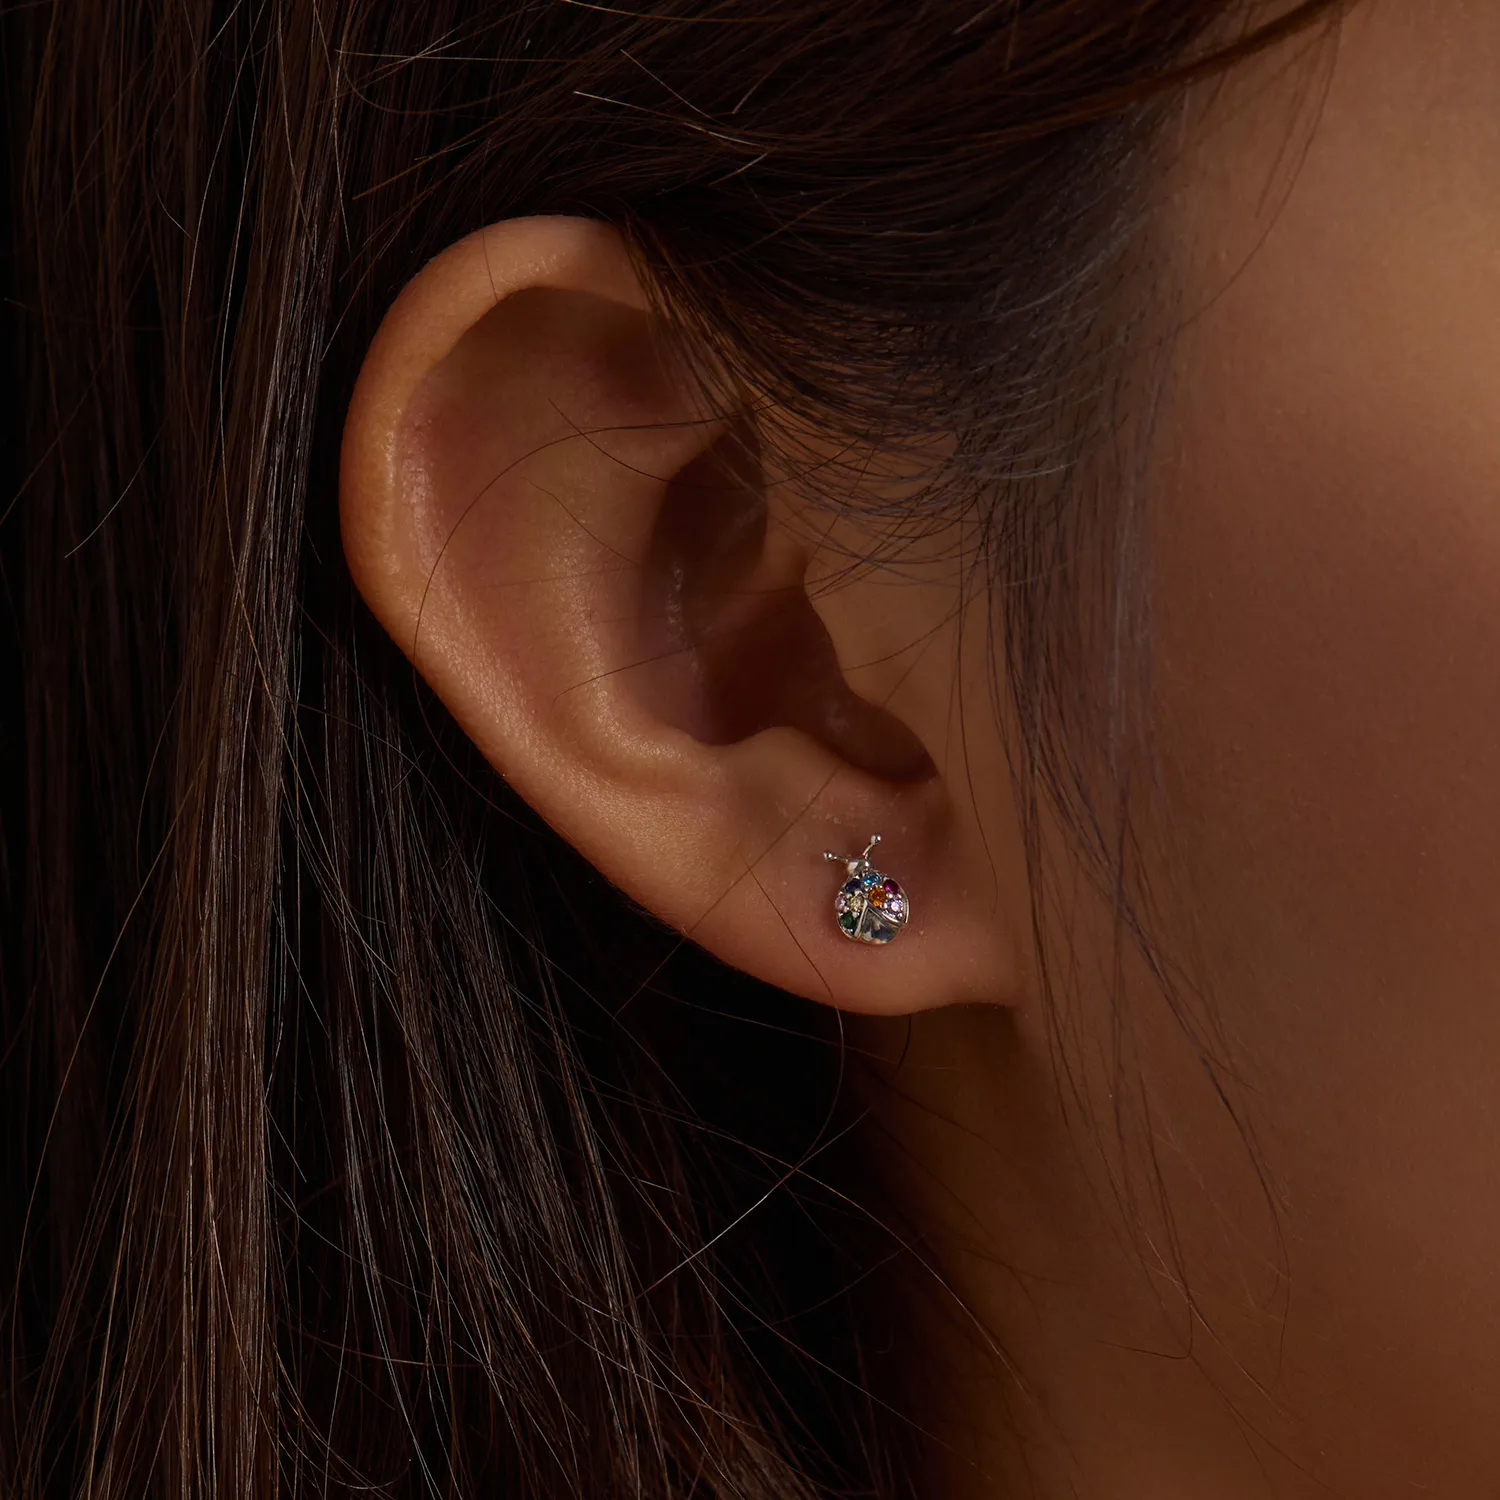 Studuri de urechi în stilul Pandora cu gândaci colorați - BSE560